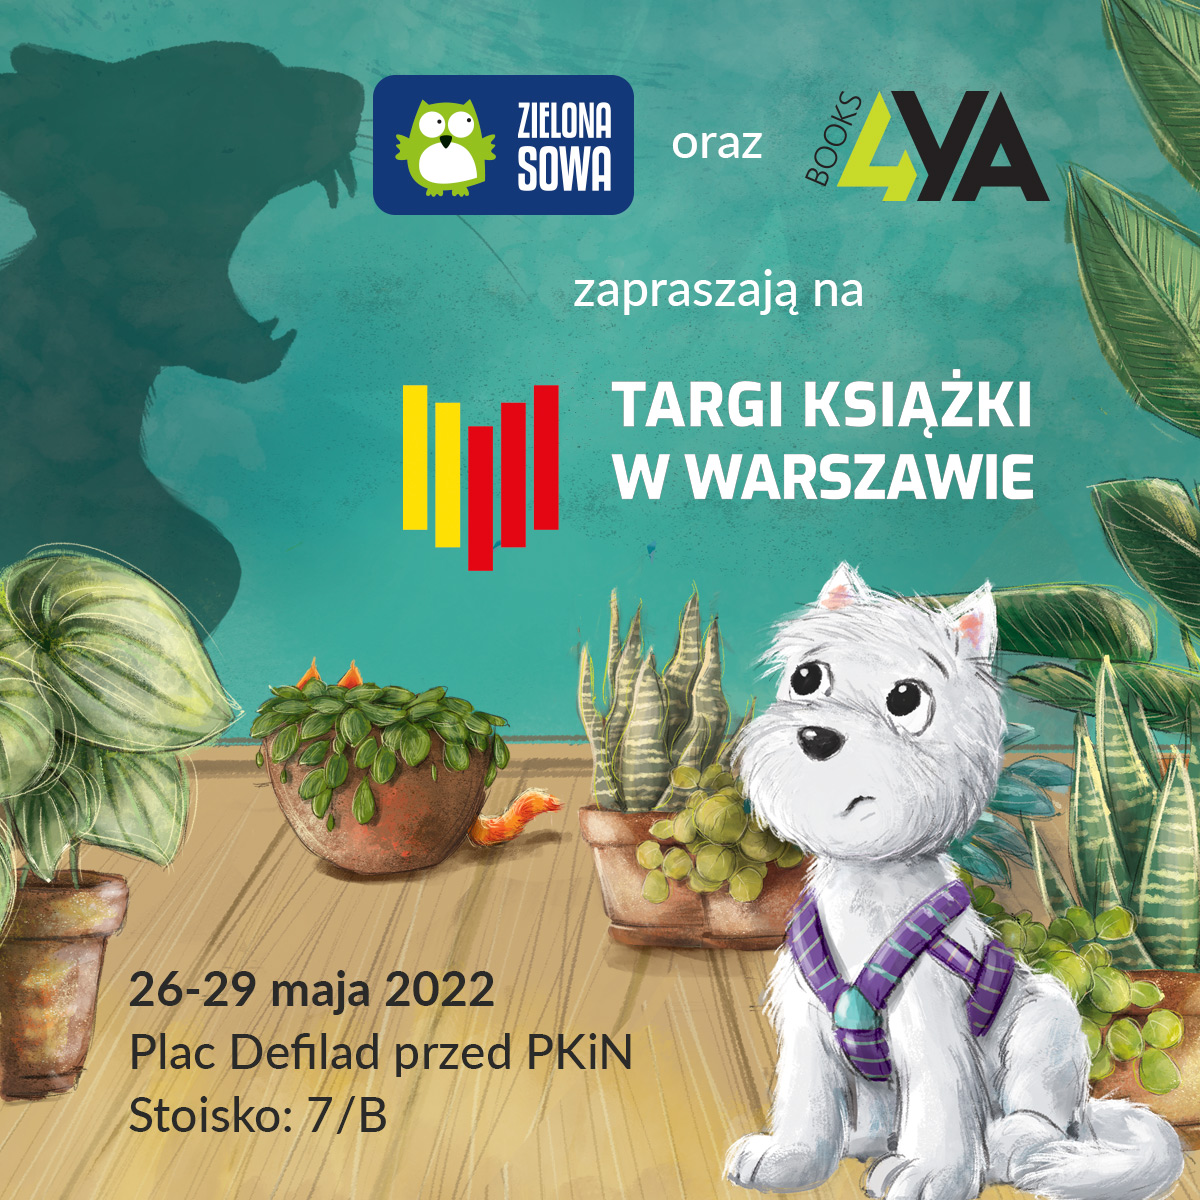 Zielona Sowa zaprasza na Targi Książki w Warszawie! 